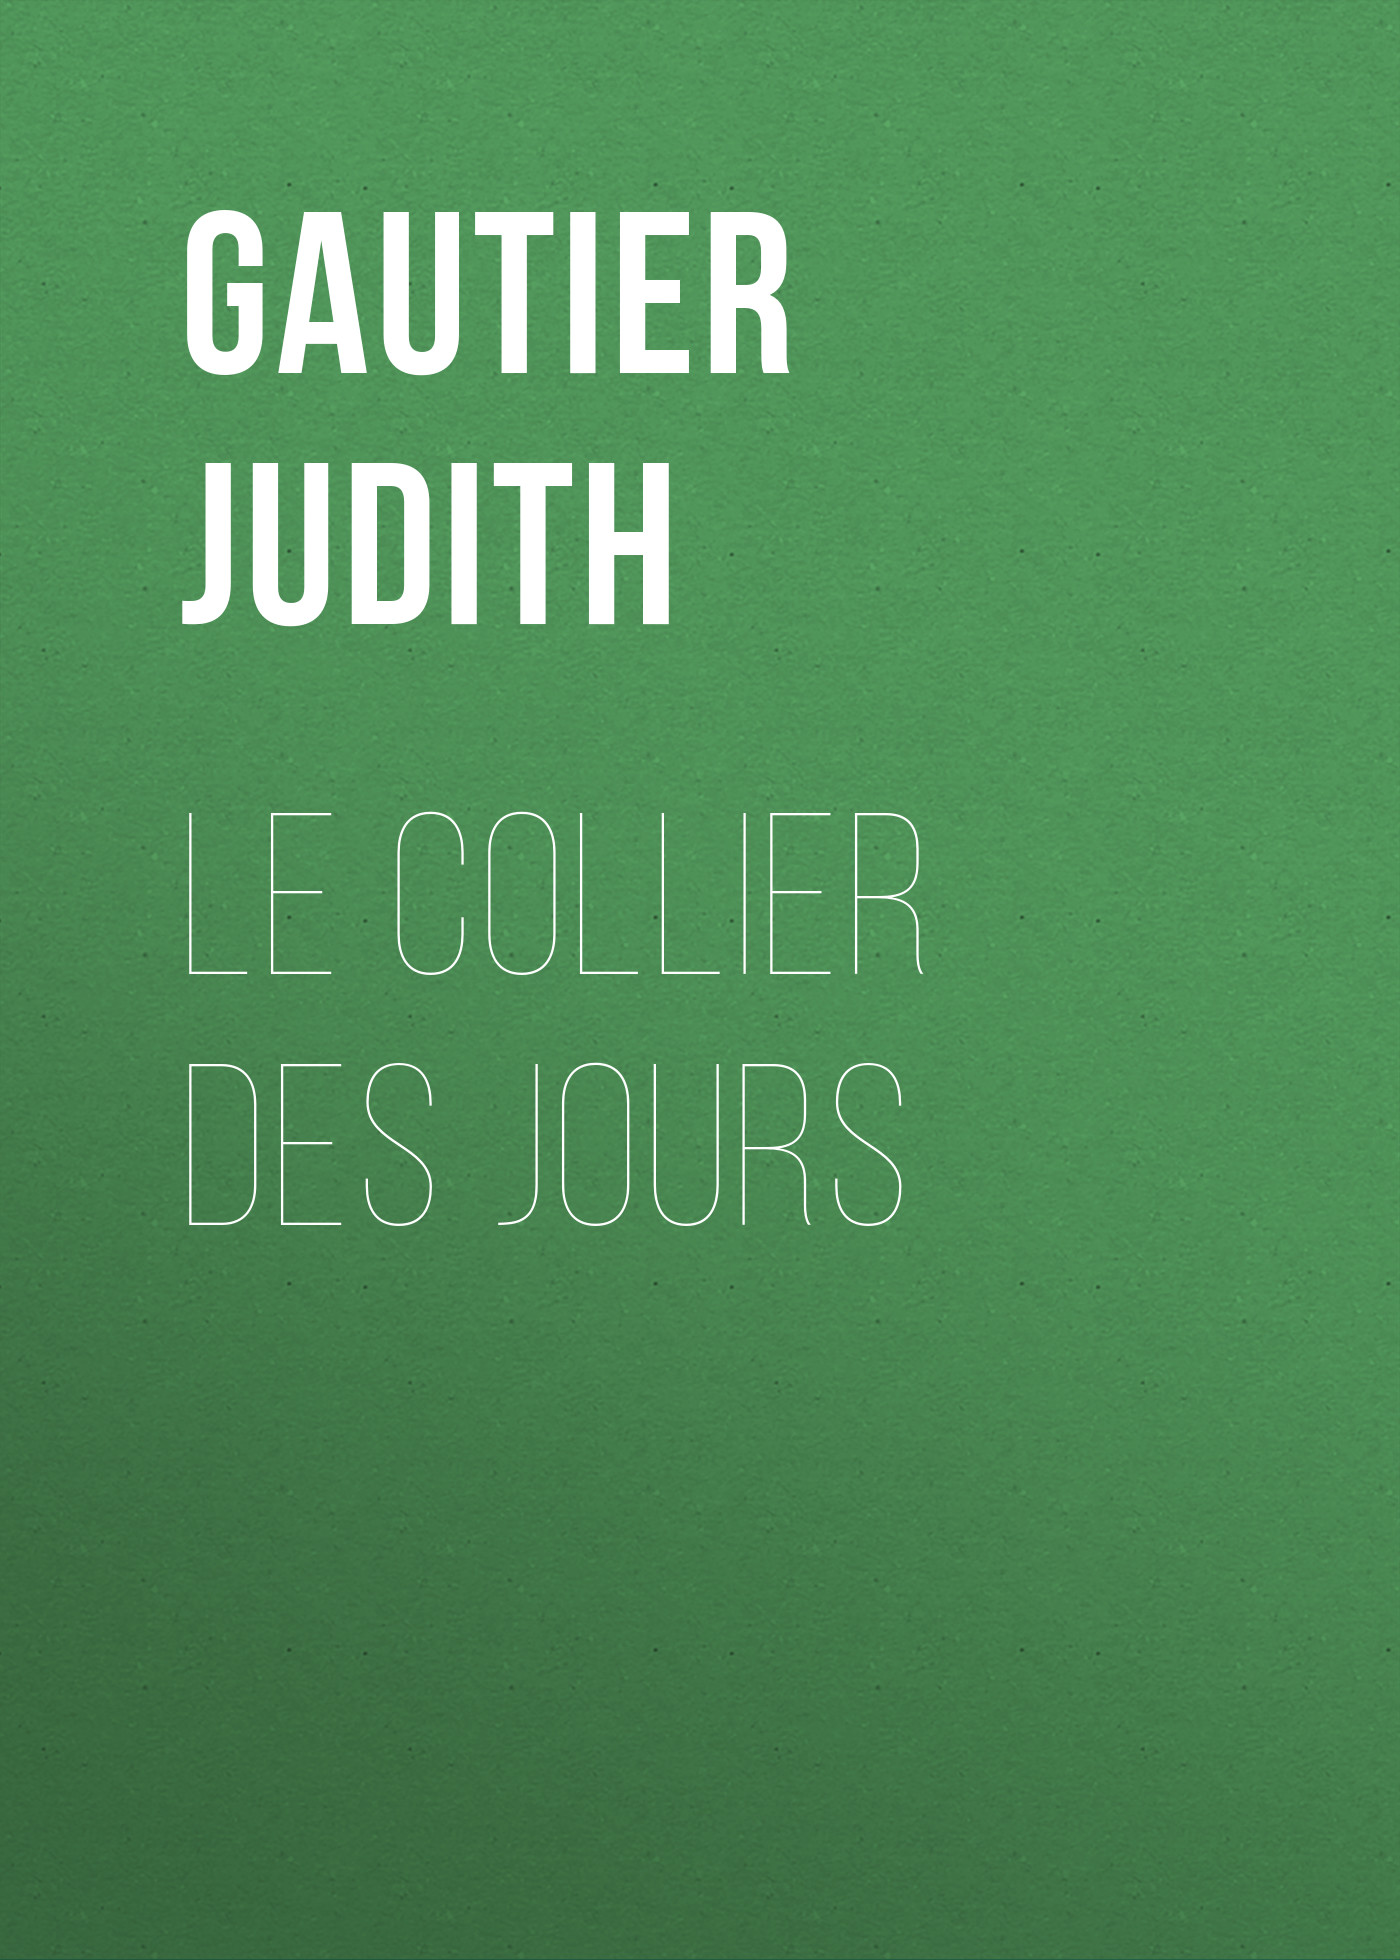 Книга Le collier des jours из серии , созданная Judith Gautier, может относится к жанру Зарубежная старинная литература, Зарубежная классика. Стоимость электронной книги Le collier des jours с идентификатором 24860579 составляет 0 руб.